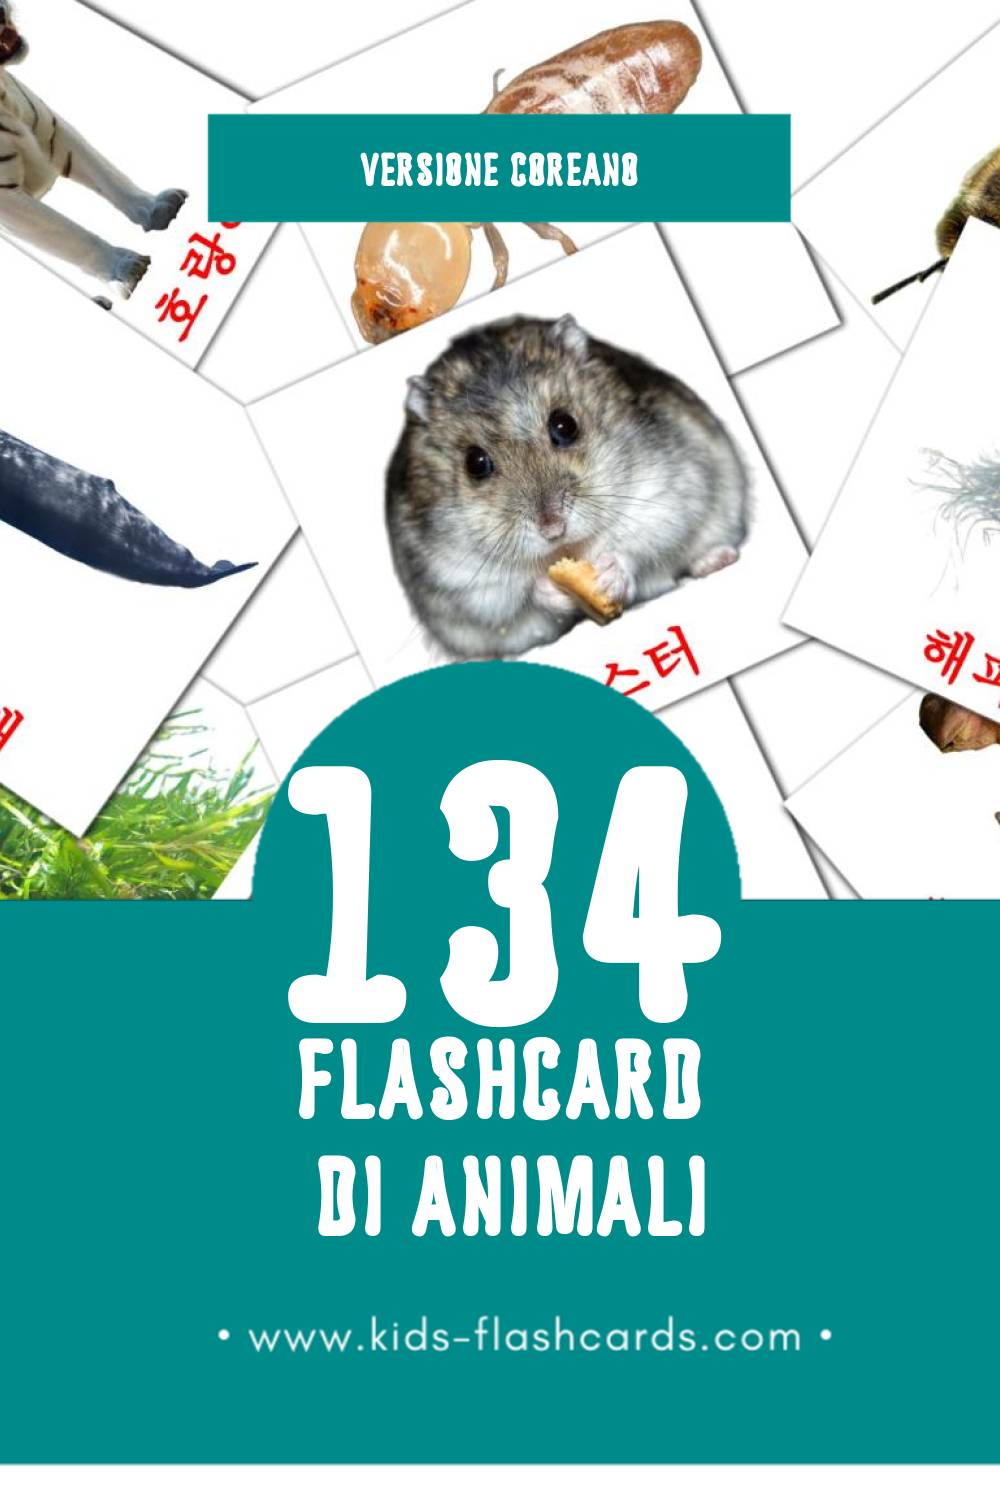 Schede visive sugli 동물 per bambini (134 schede in Coreano)